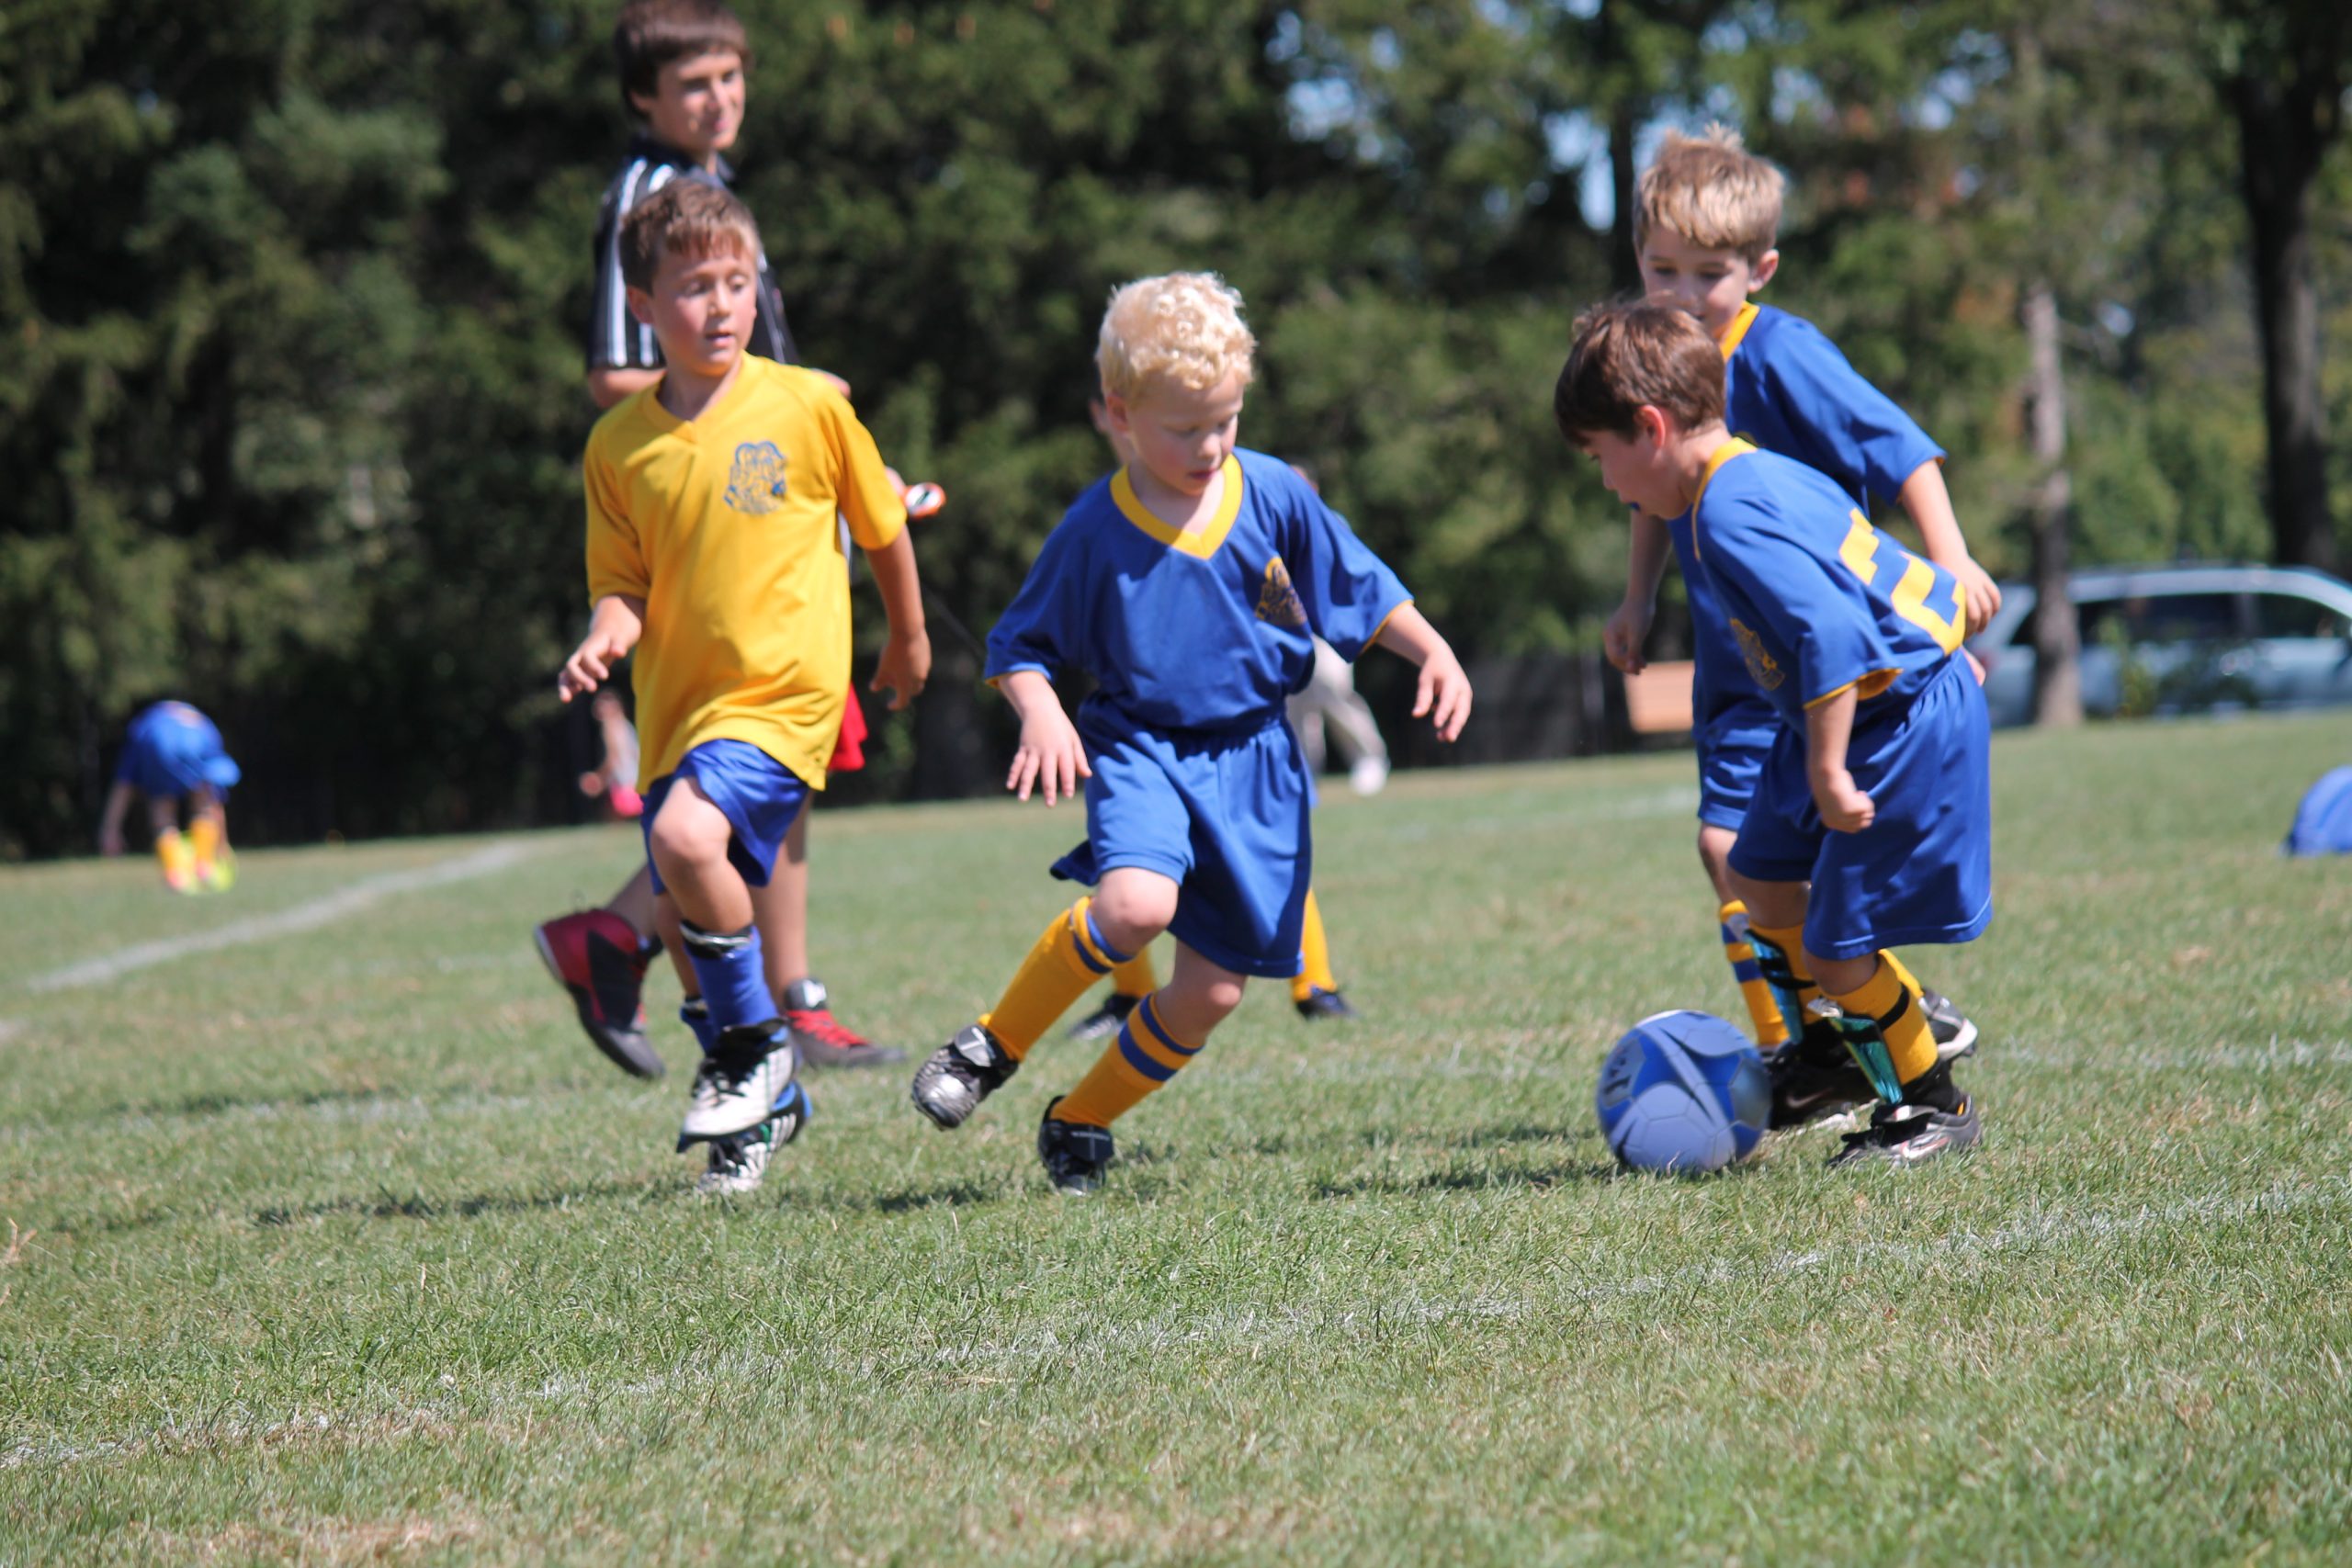 Trening piłki nożnej – wszechstronne szkolenie ruchowe, czyli najwyższa pora kształtować koordynację ruchową